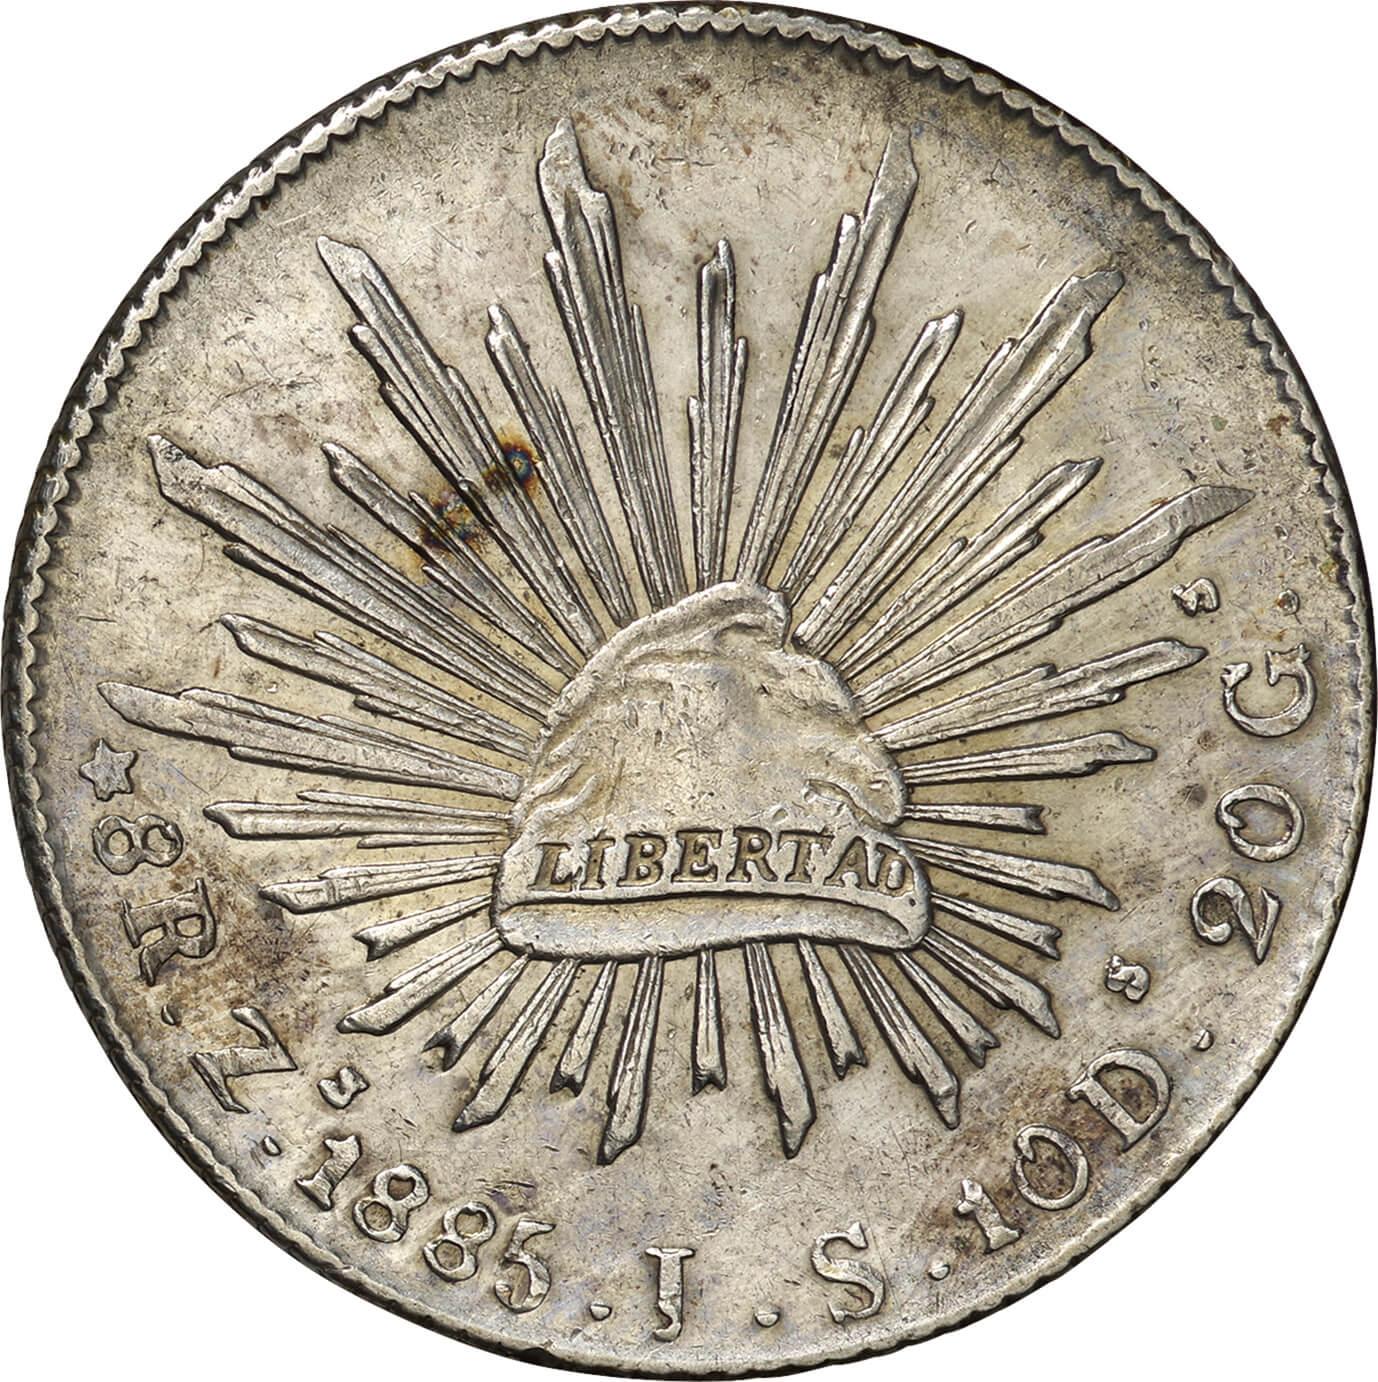 メキシコ8レアル銀貨